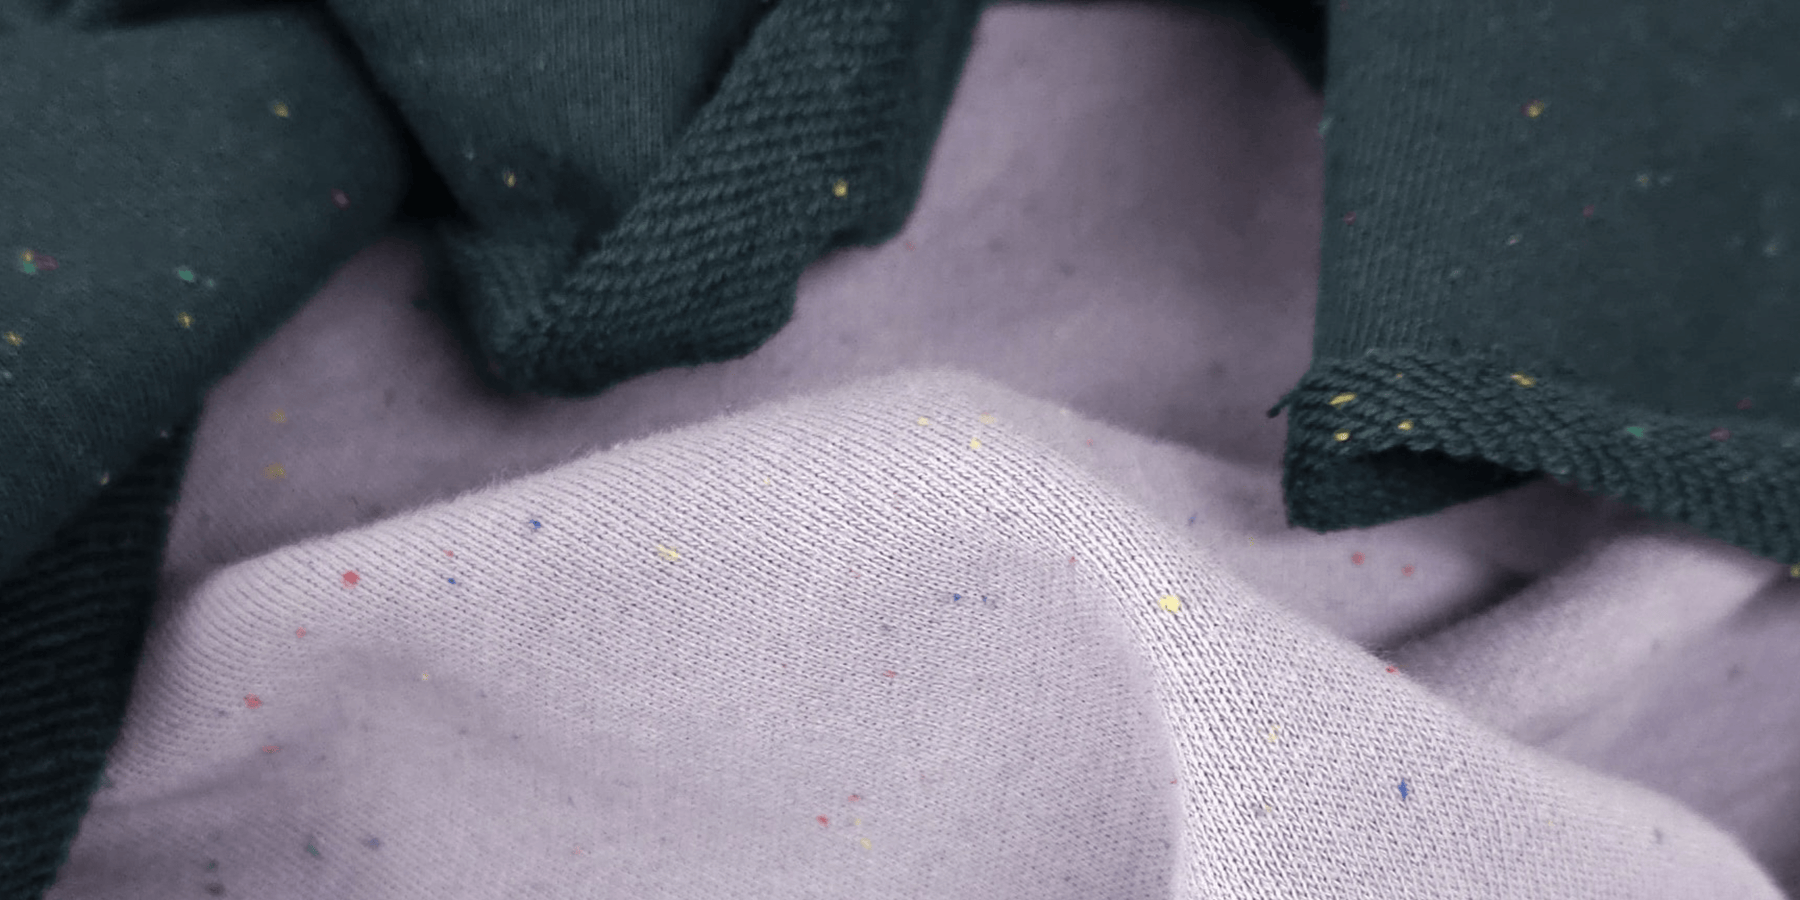 Buy Scuba Suede Fabric Online in Canada – Les Tissées